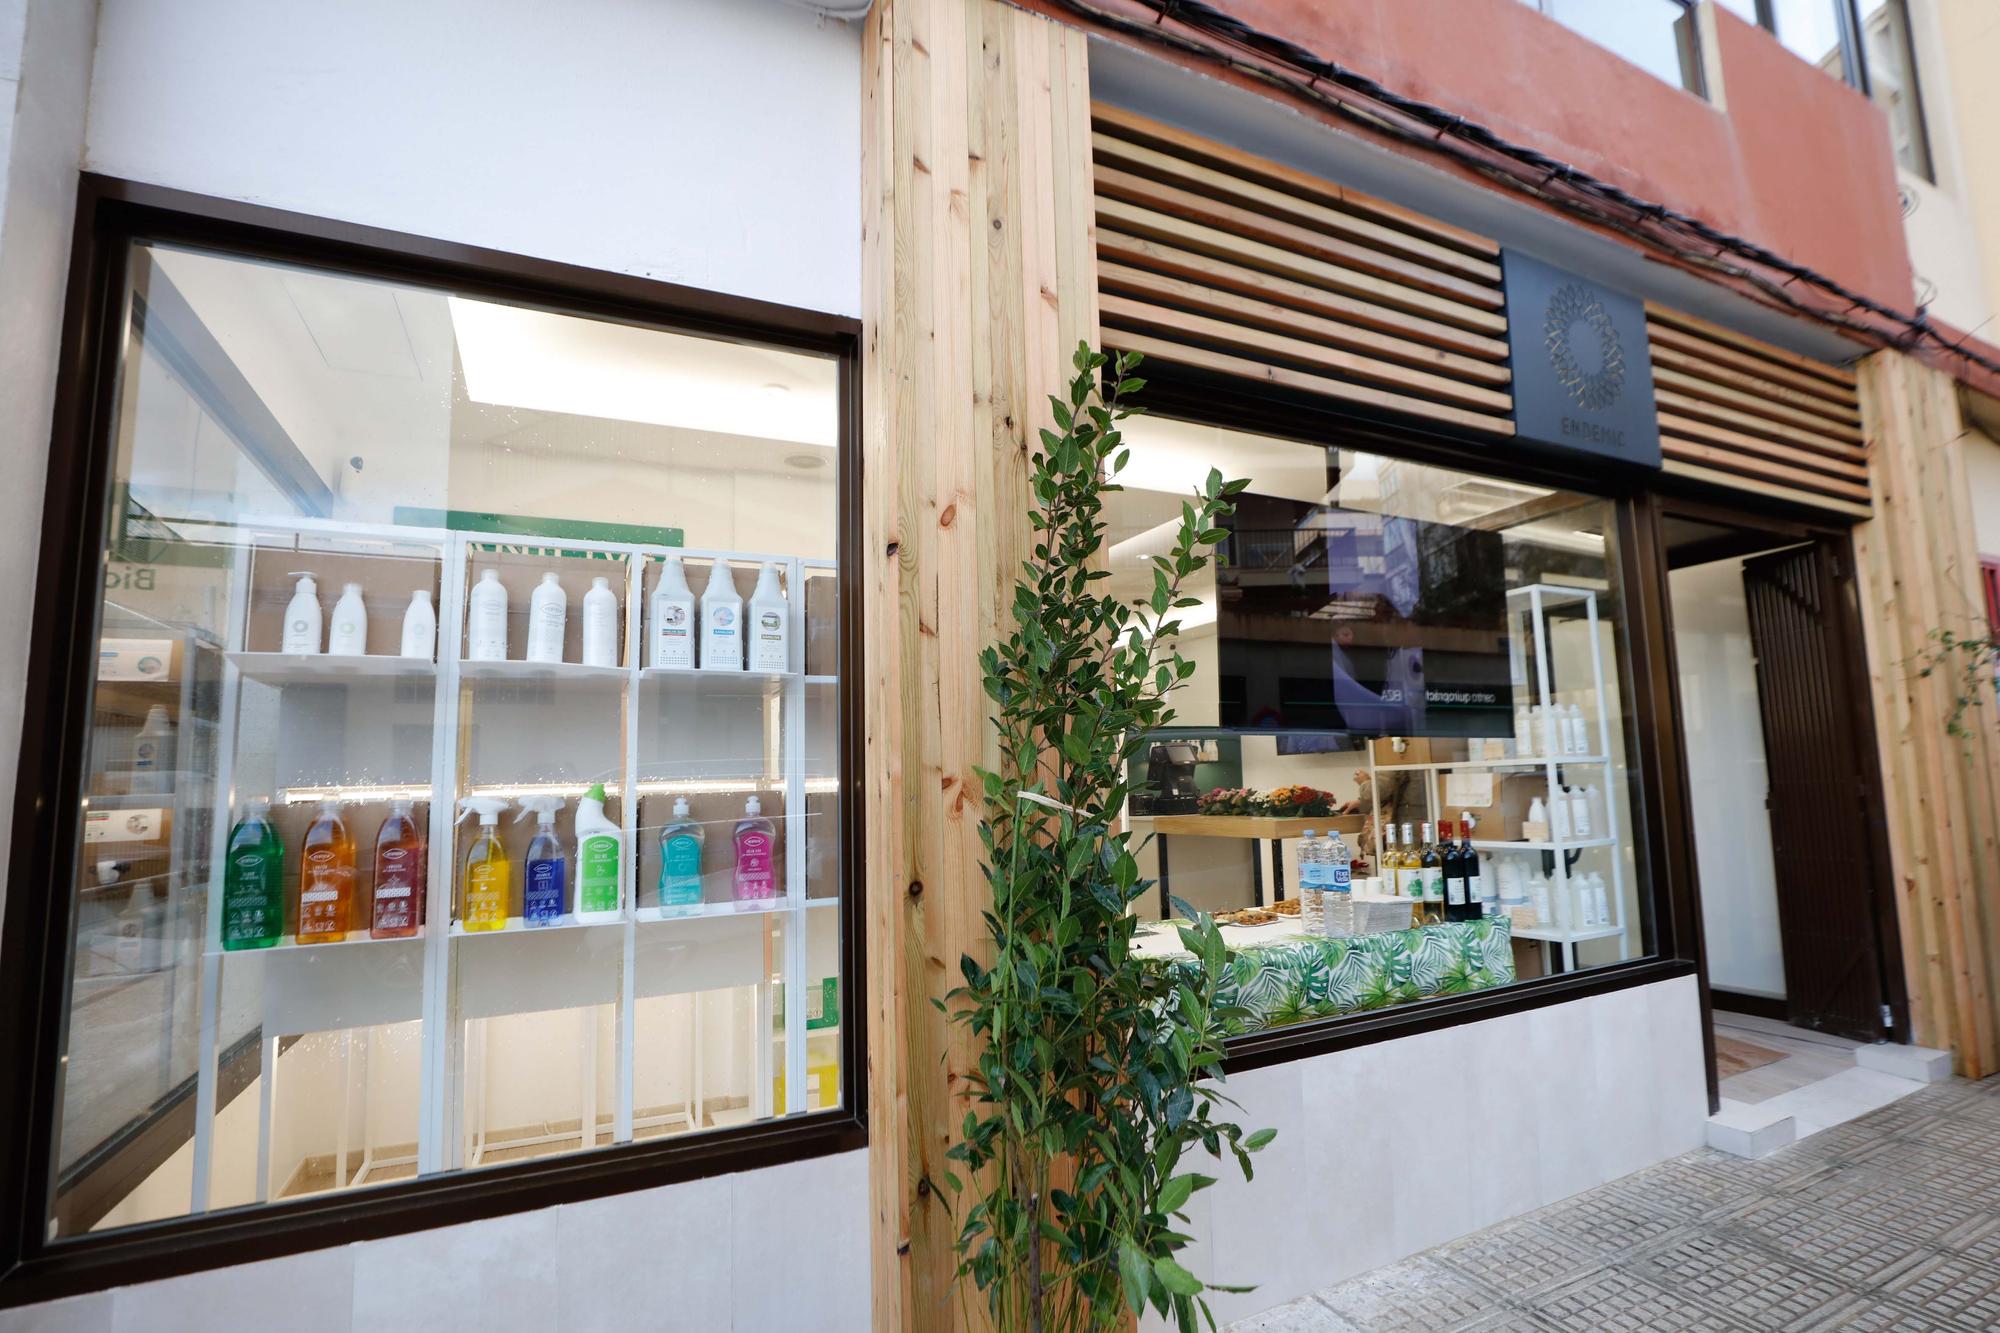 Galería de imágenes inauguración de la tienda Endemic en Ibiza